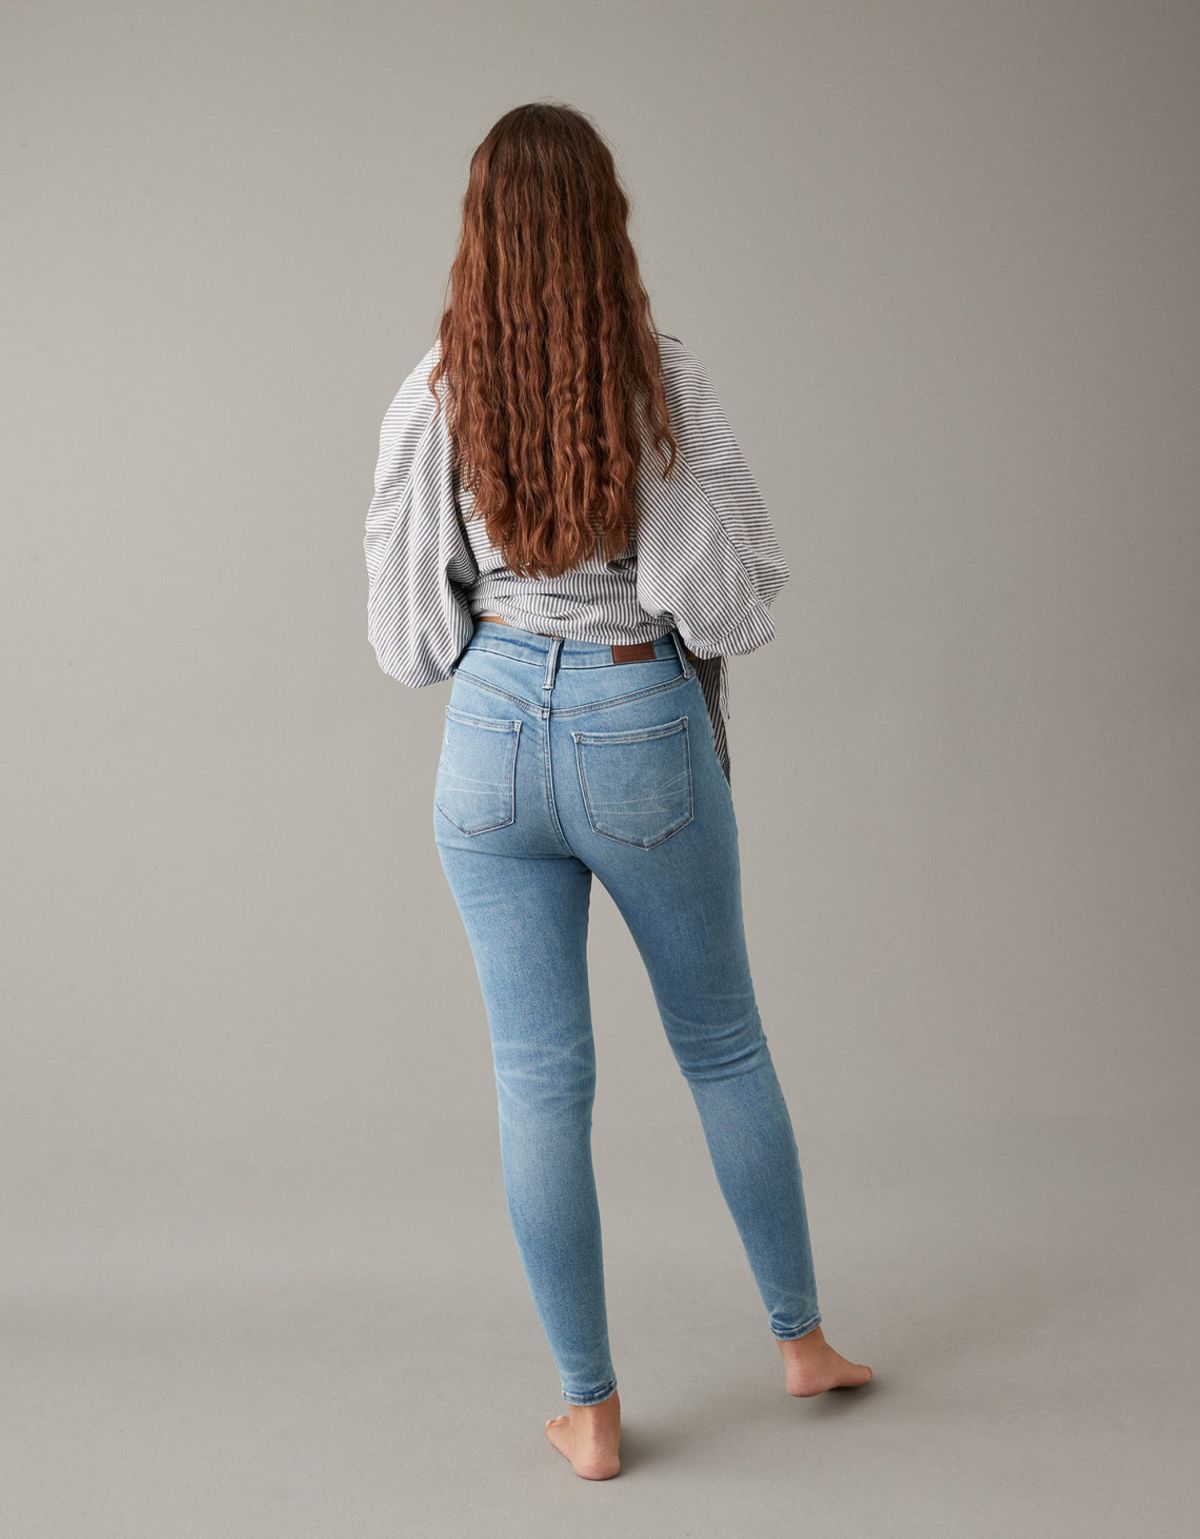  מכנסי ג'ינס SELF SIZE SUPER HIGH-RISE JEGGING של AMERICAN EAGLE